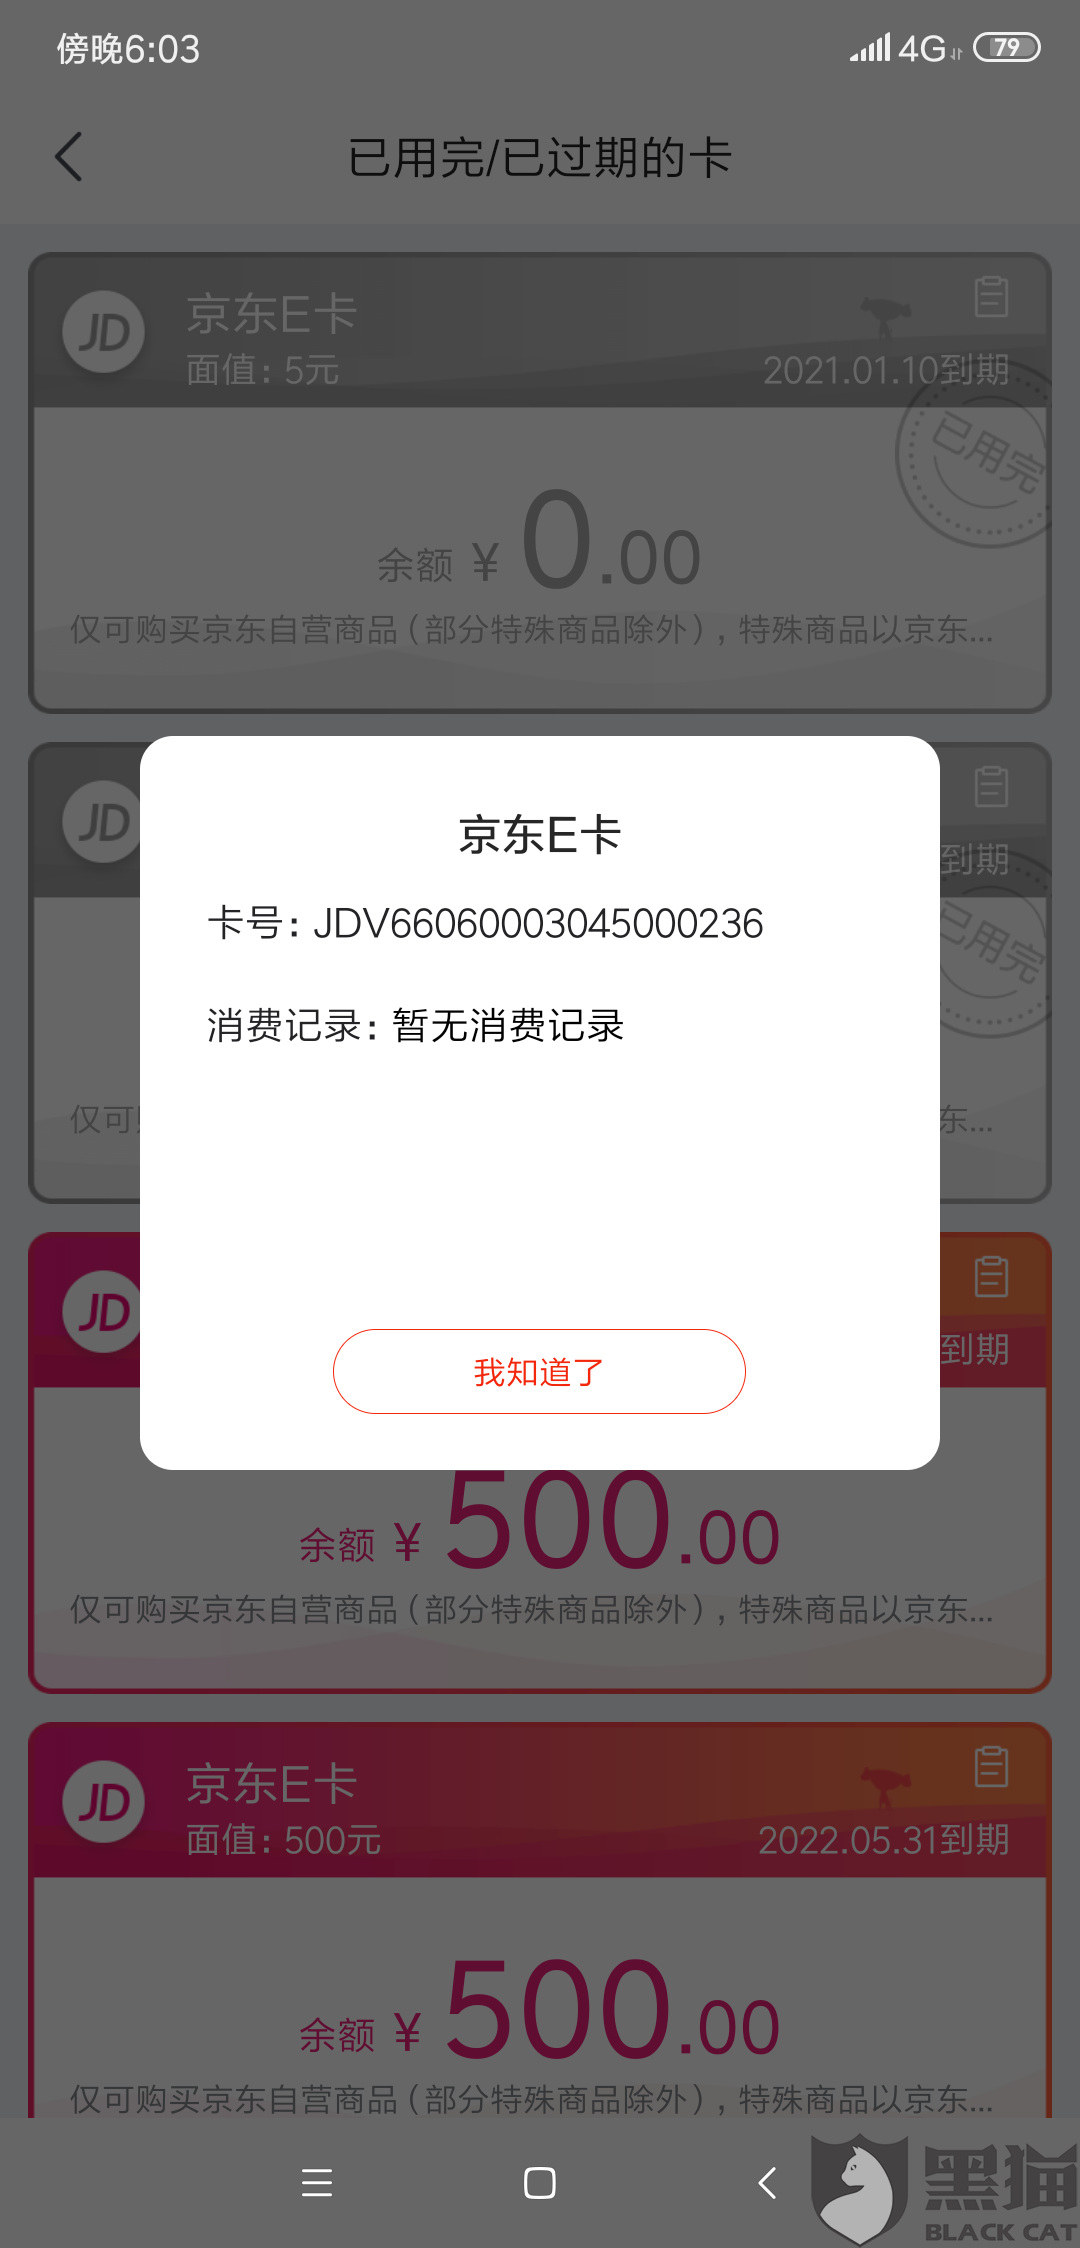 3、购买京东账号：如何在京东网上买东西？如果我有账号可以购买吗？如何付款？ 